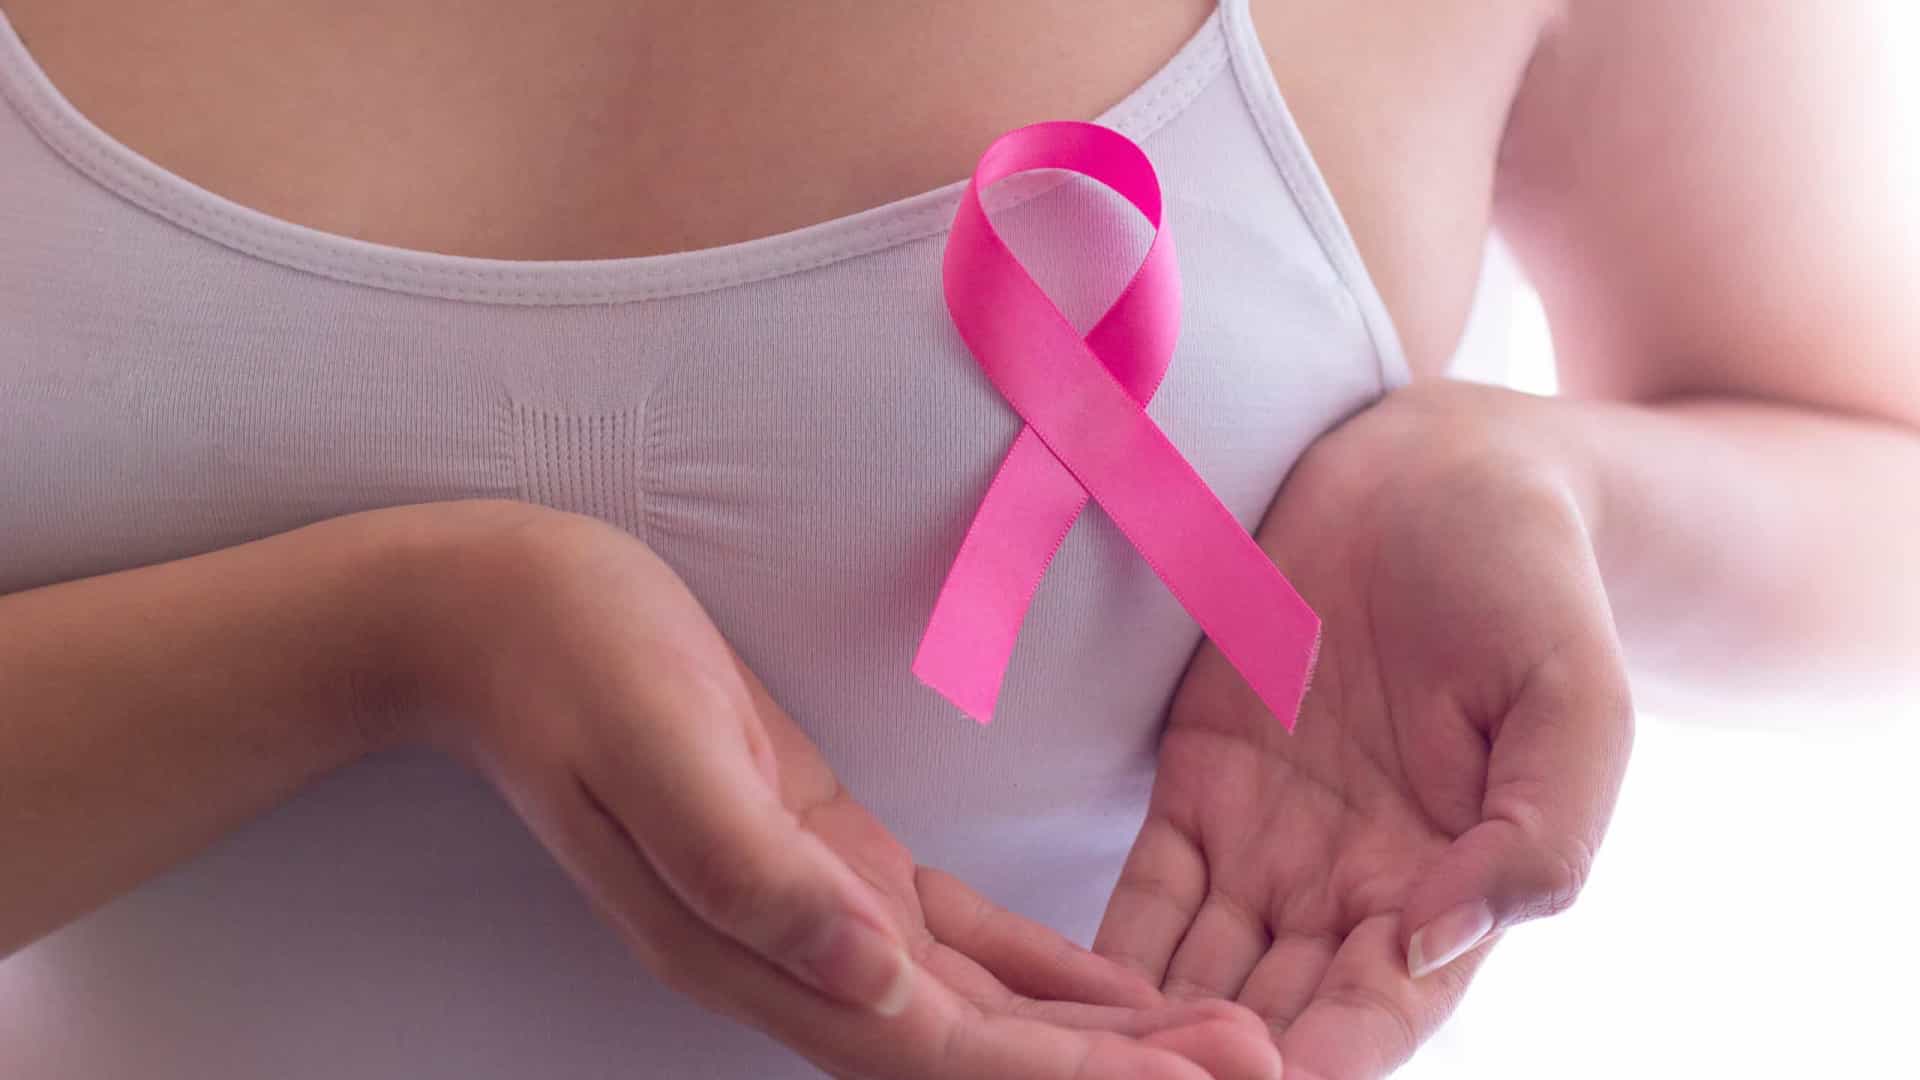 O Enhertu pode ser usado contra o câncer de mama em estágio avançado